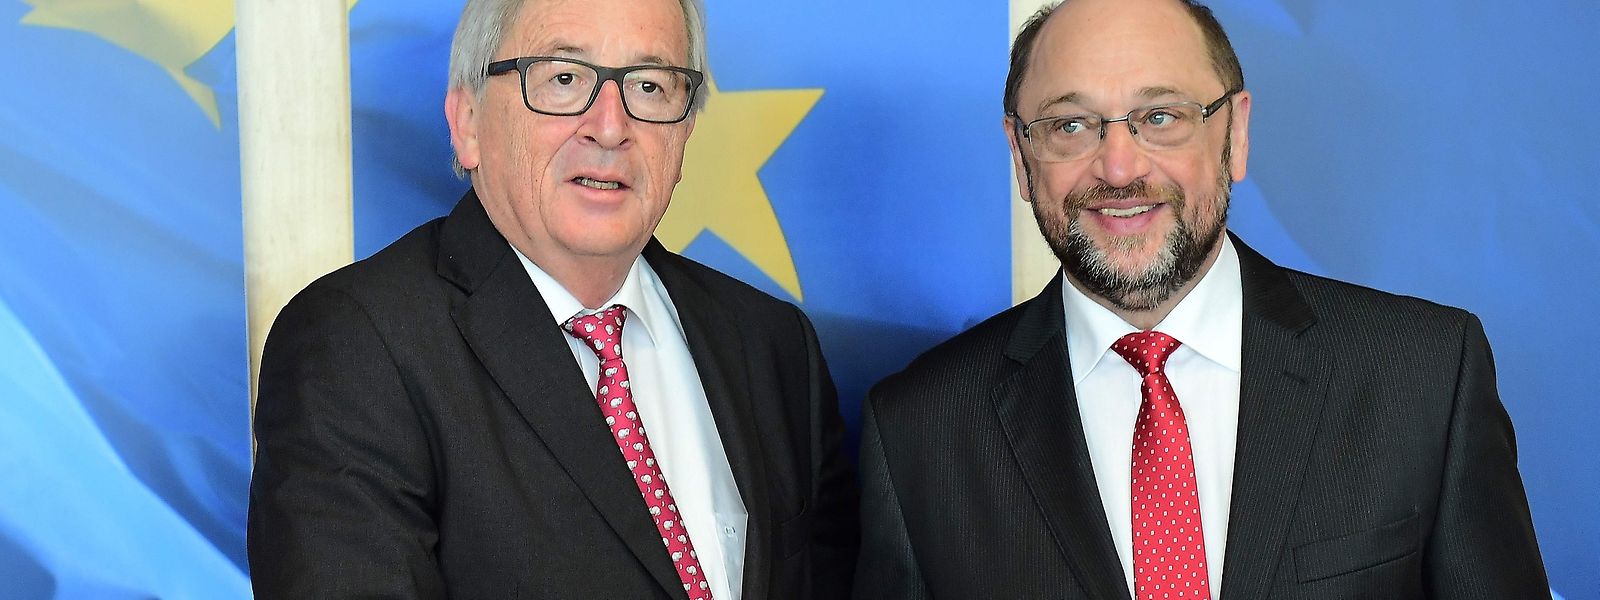 Am Donnerstag traf Schulz in Brüssel auf EU-Kommissionspräsident Jean-Claude Juncker.